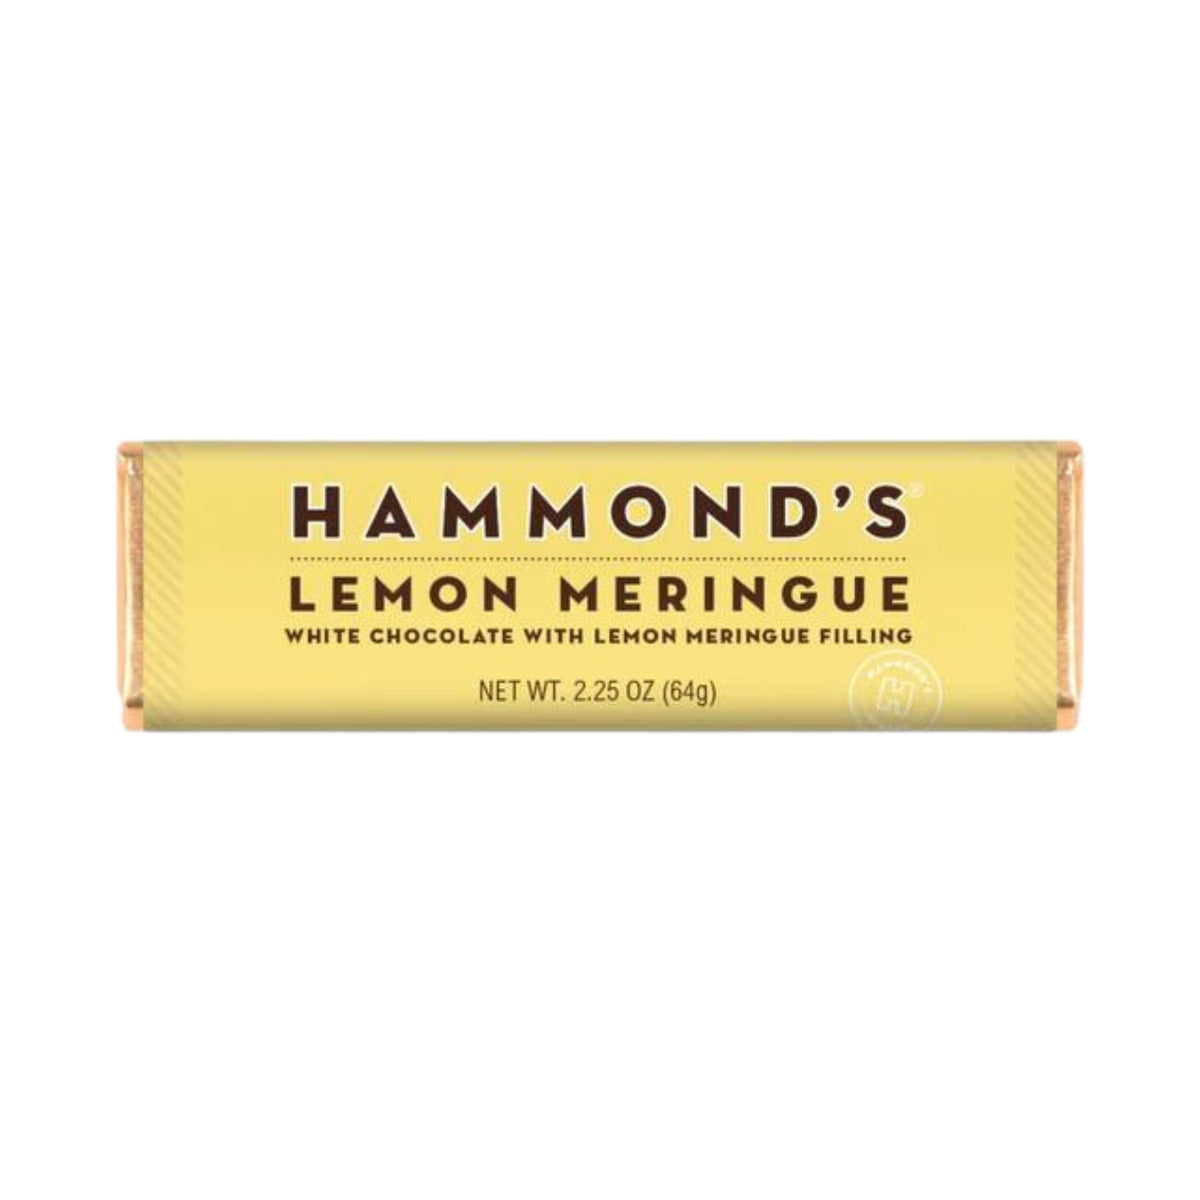 Hammond's Lemon Meringue White Chocolate 65g (USA)